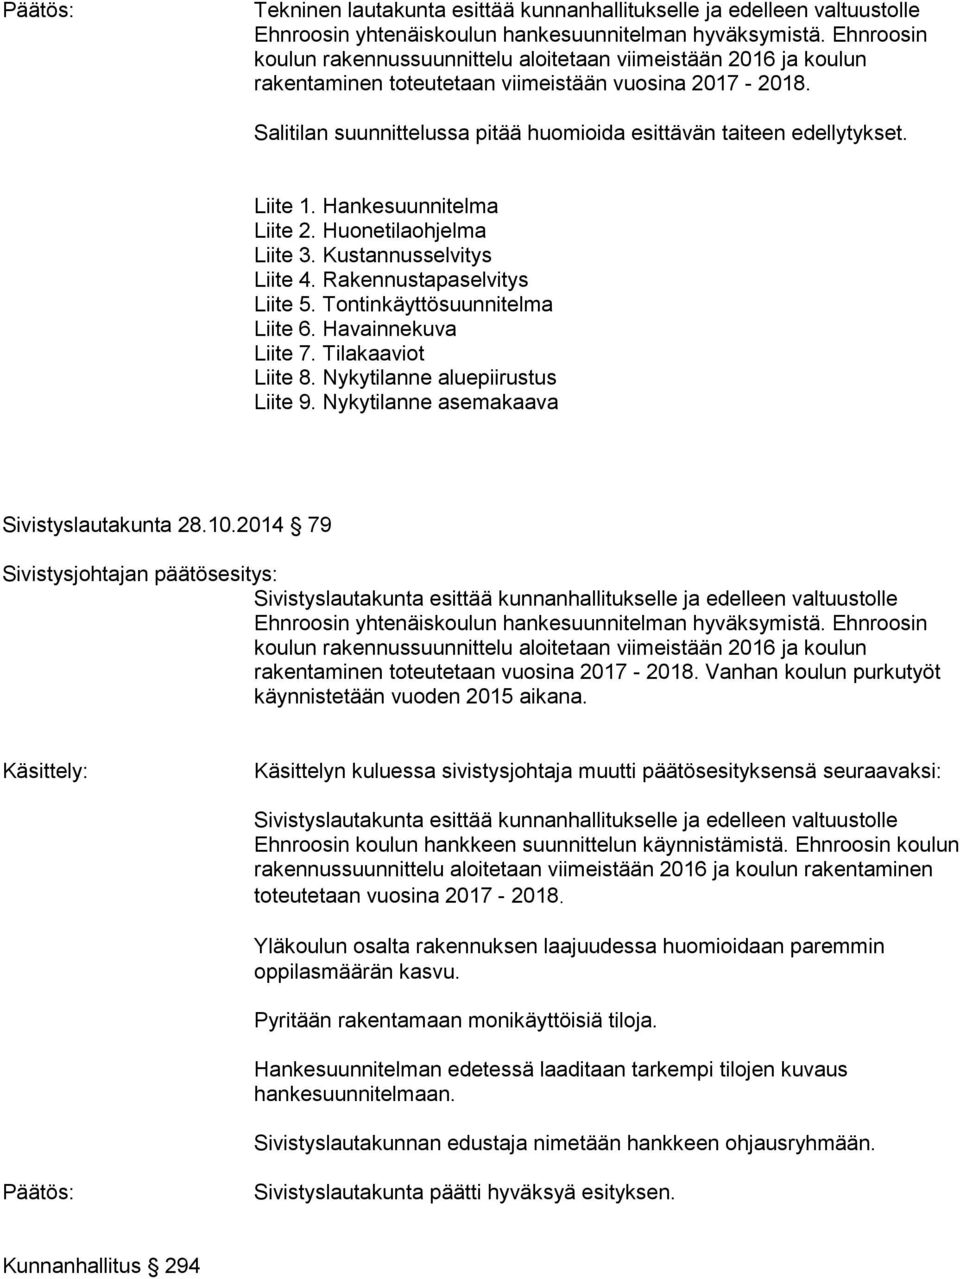 Nykytilanne asemakaava Sivistyslautakunta 28.10.